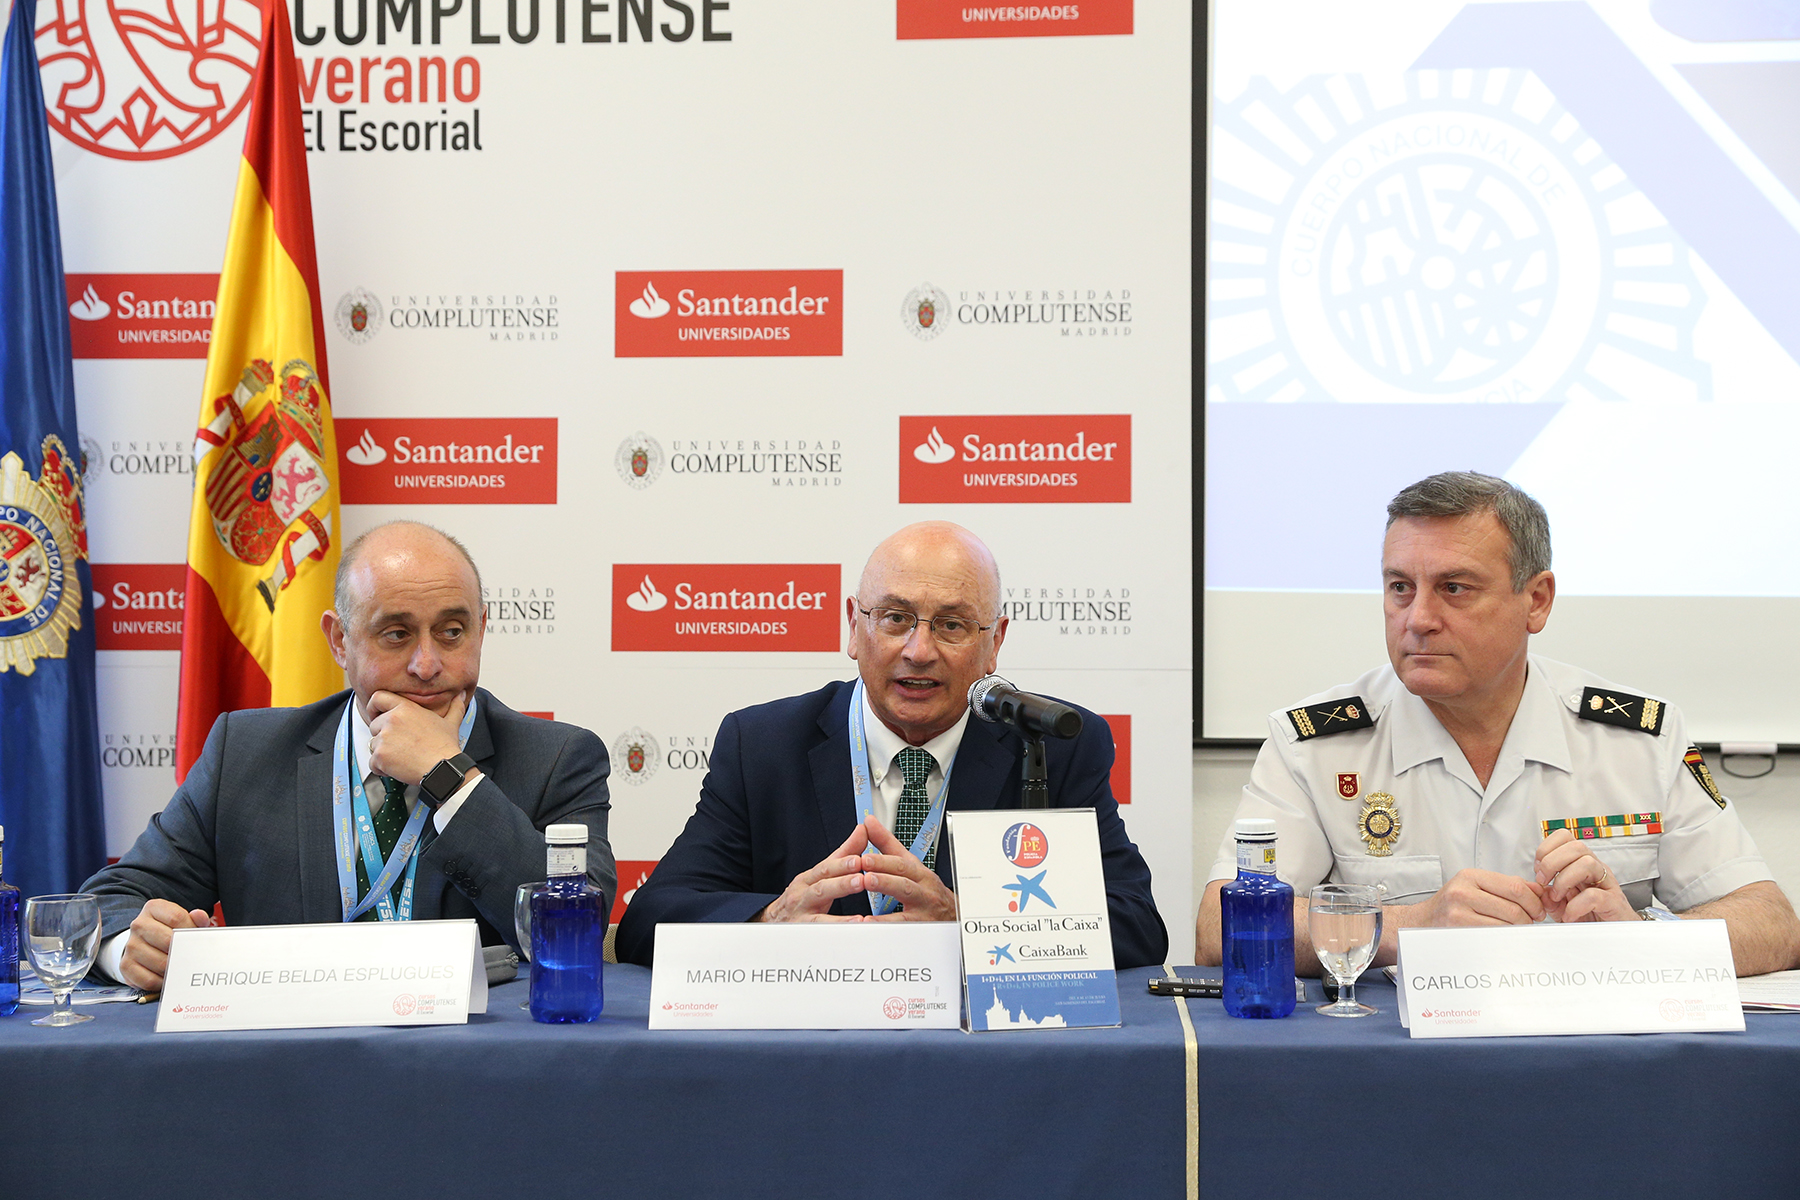 Mesa de ponentes con tres autoridades presidida por el Comisario Mario Hernández Lores